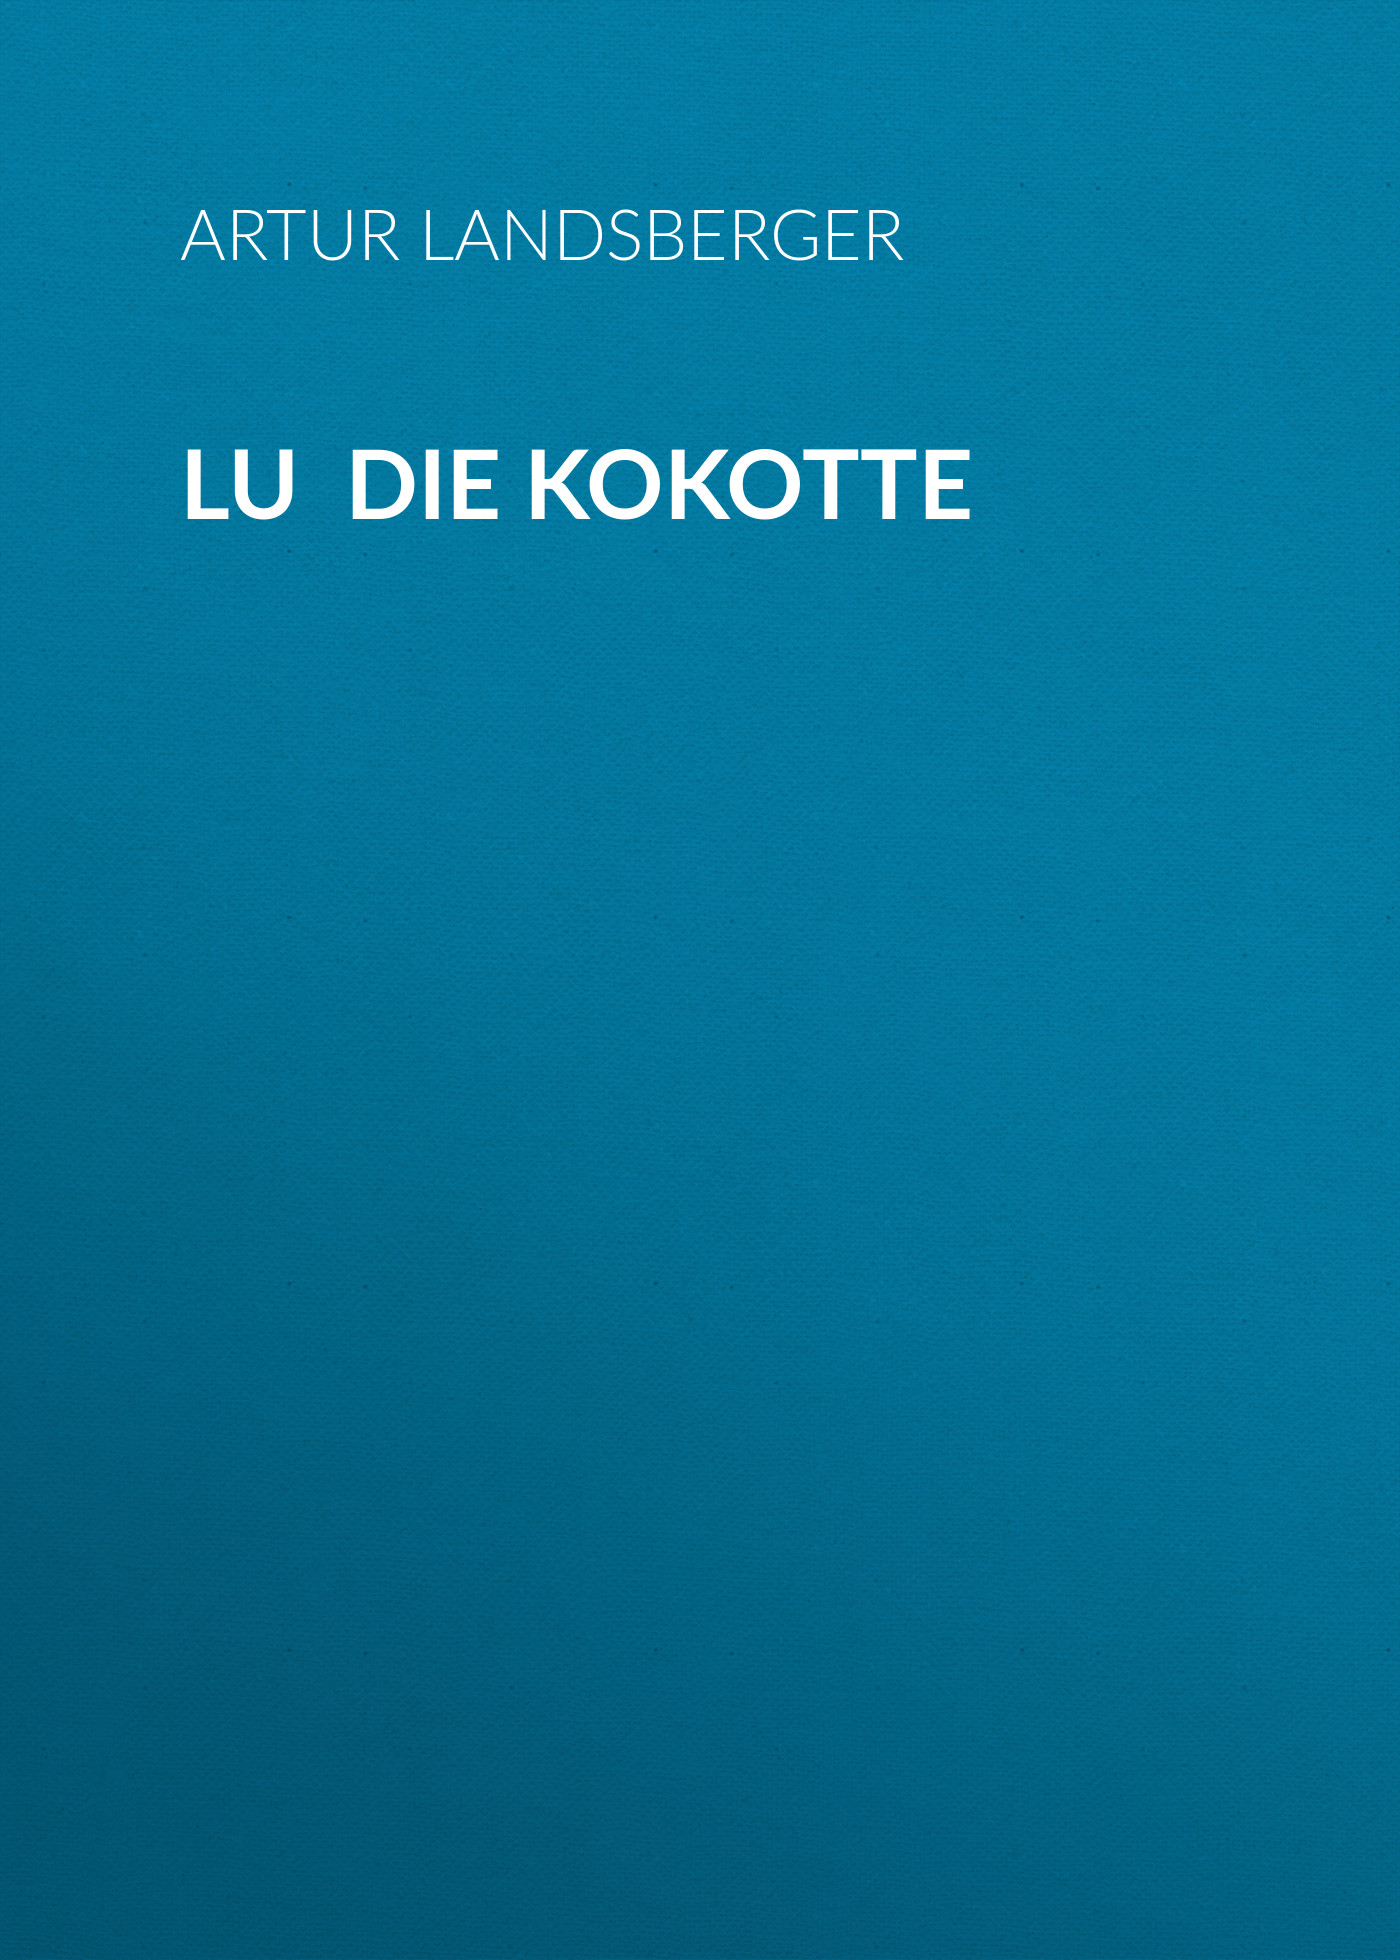 Книга Lu die Kokotte из серии , созданная Artur Landsberger, может относится к жанру Зарубежная классика. Стоимость электронной книги Lu die Kokotte с идентификатором 48633004 составляет 0 руб.